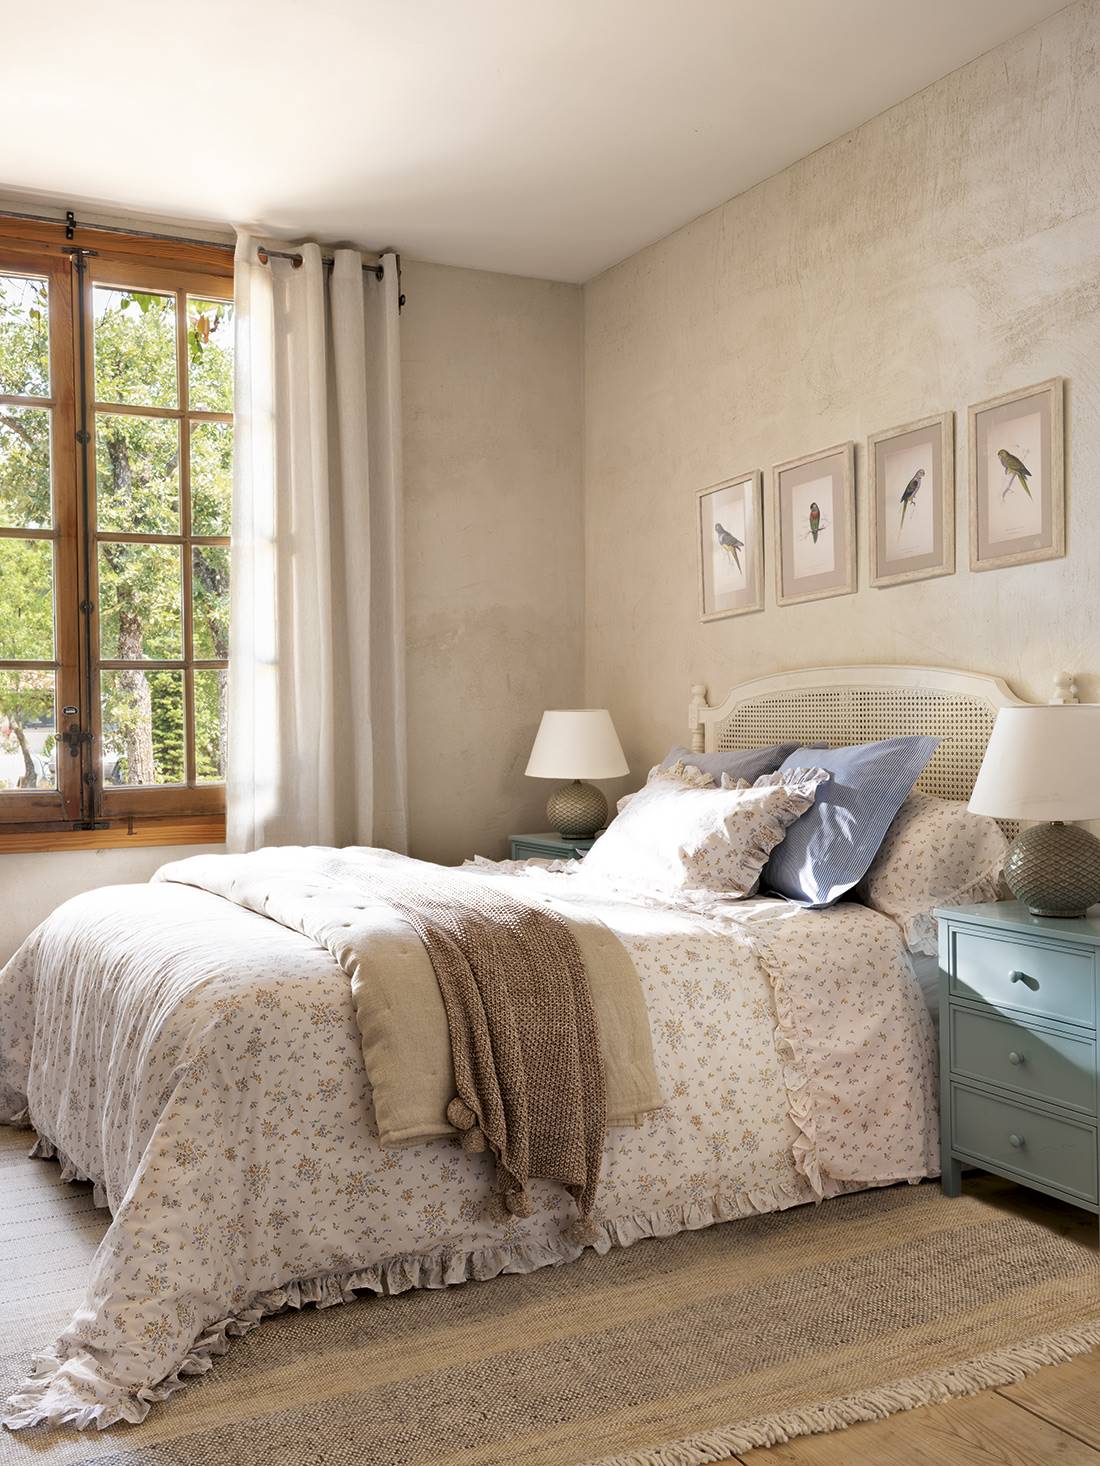  Dormitorio con cabecero blanco con rejilla, ropa de cama de flores, muebles decapados y volantes y pompones.